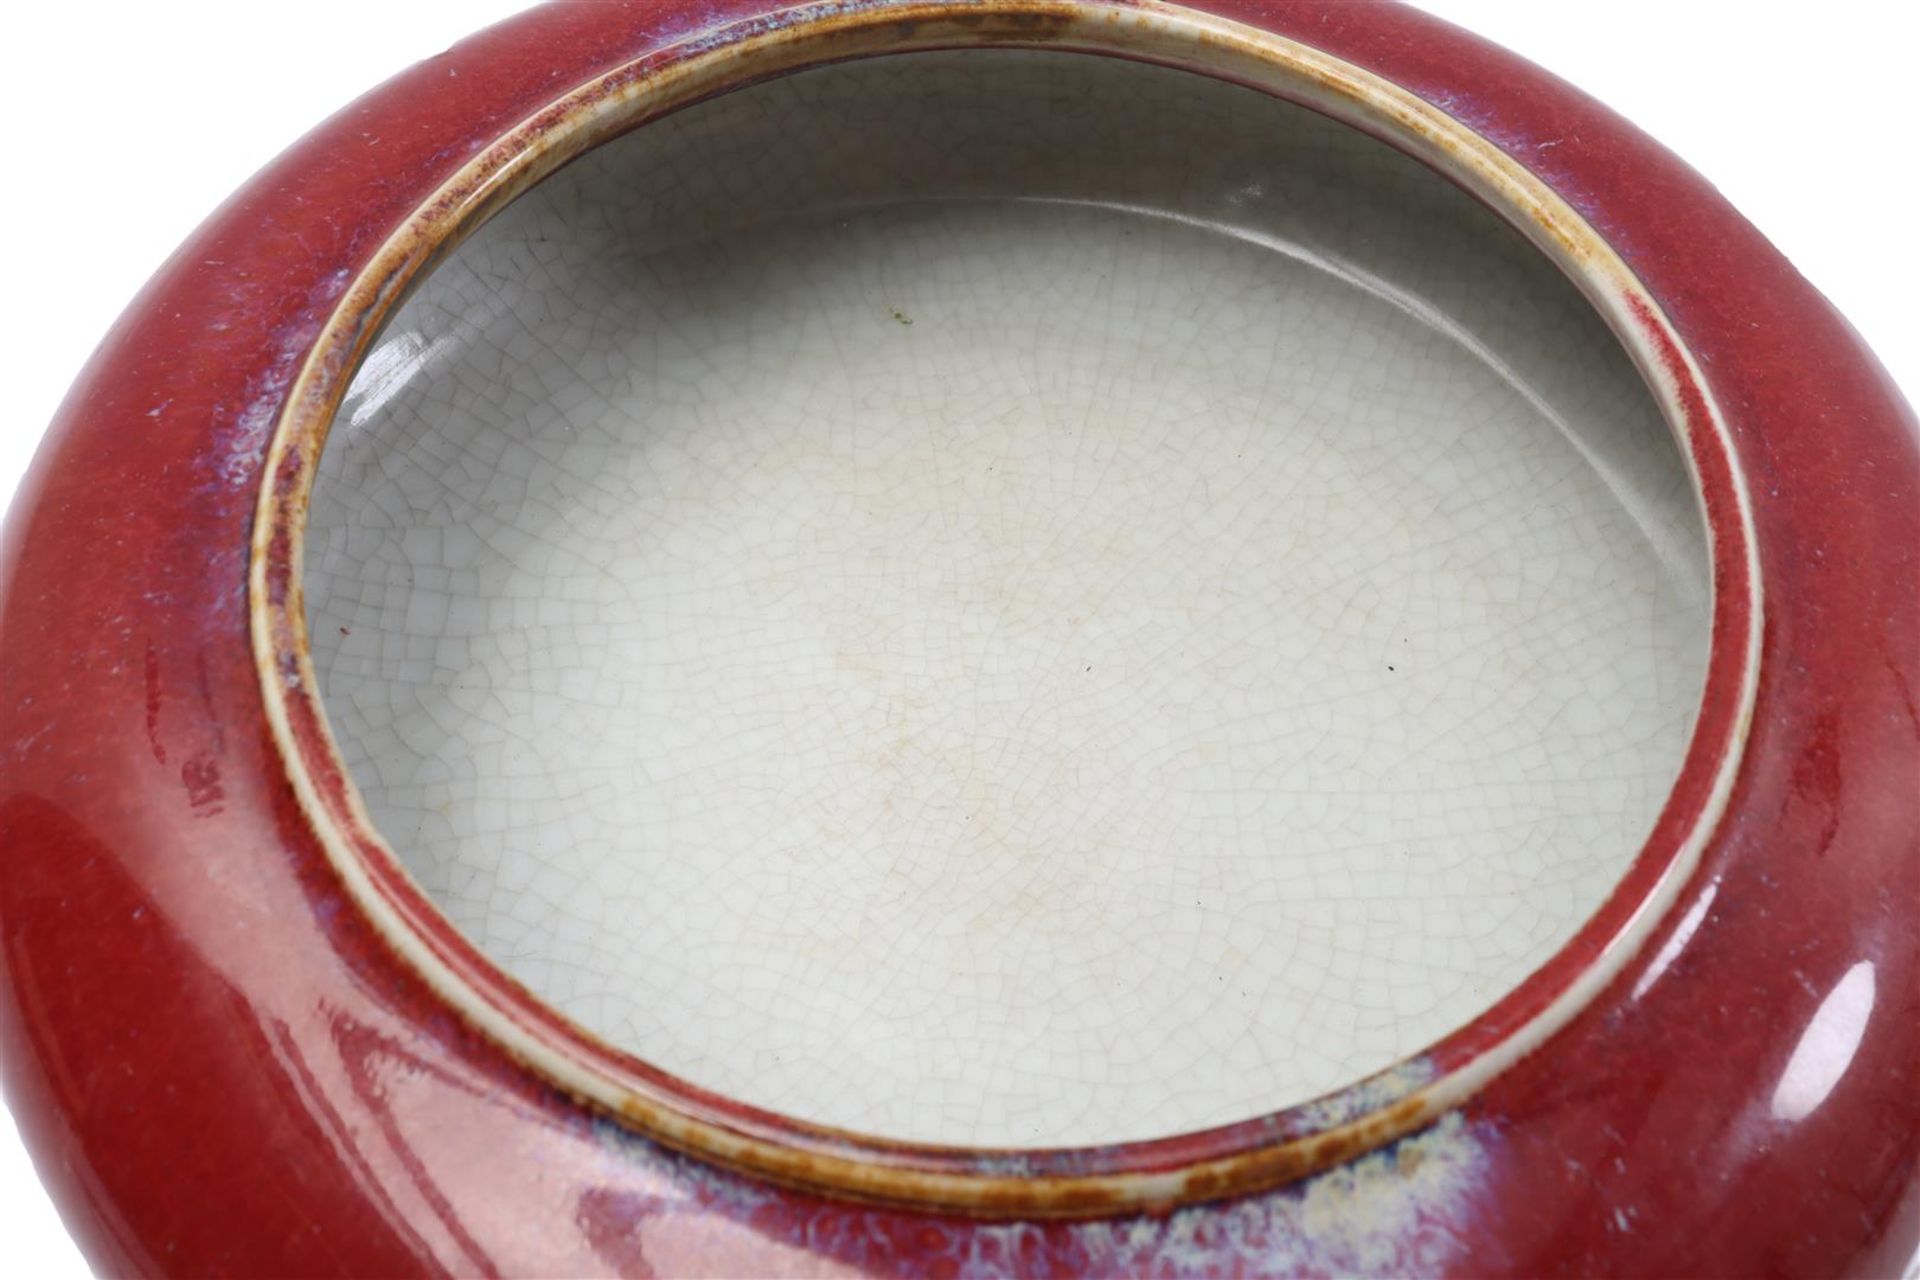 Sang de Boeuf porcelain dish - Image 2 of 3